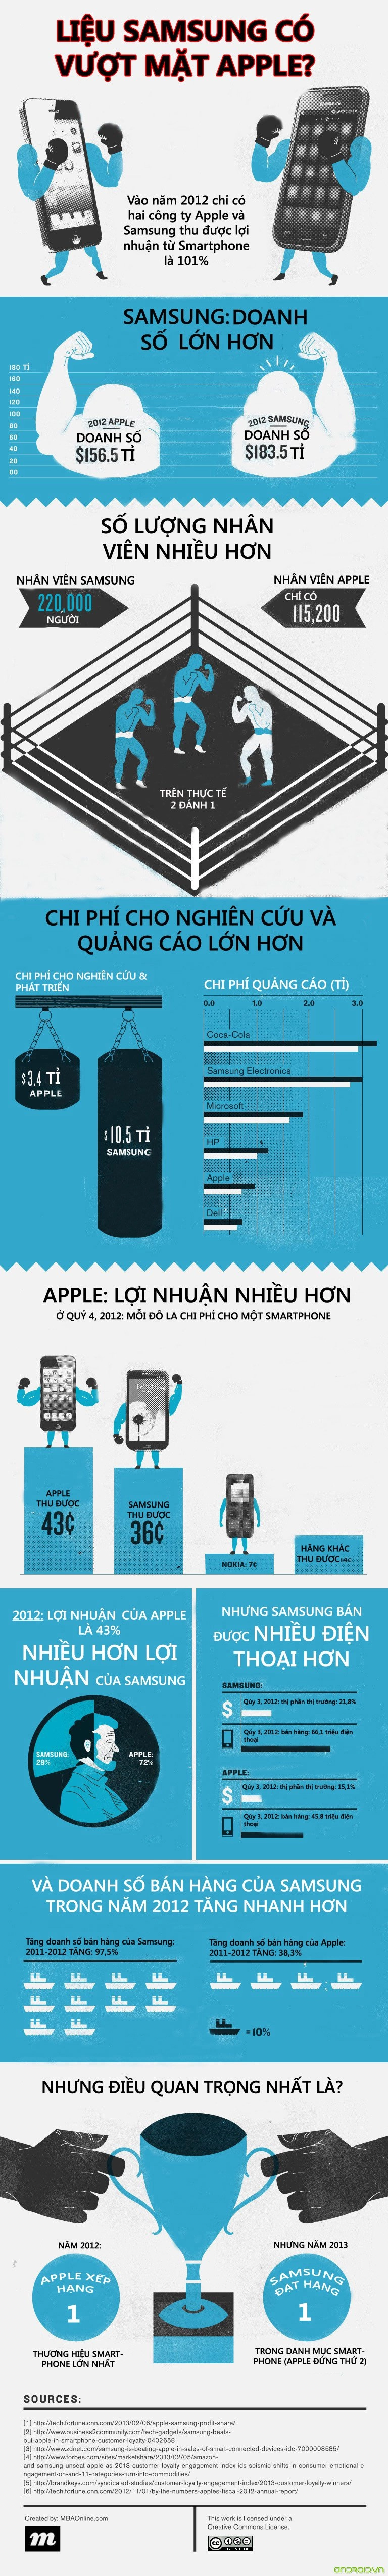 Infographic liệu samsung có vượt mặt apple - 2